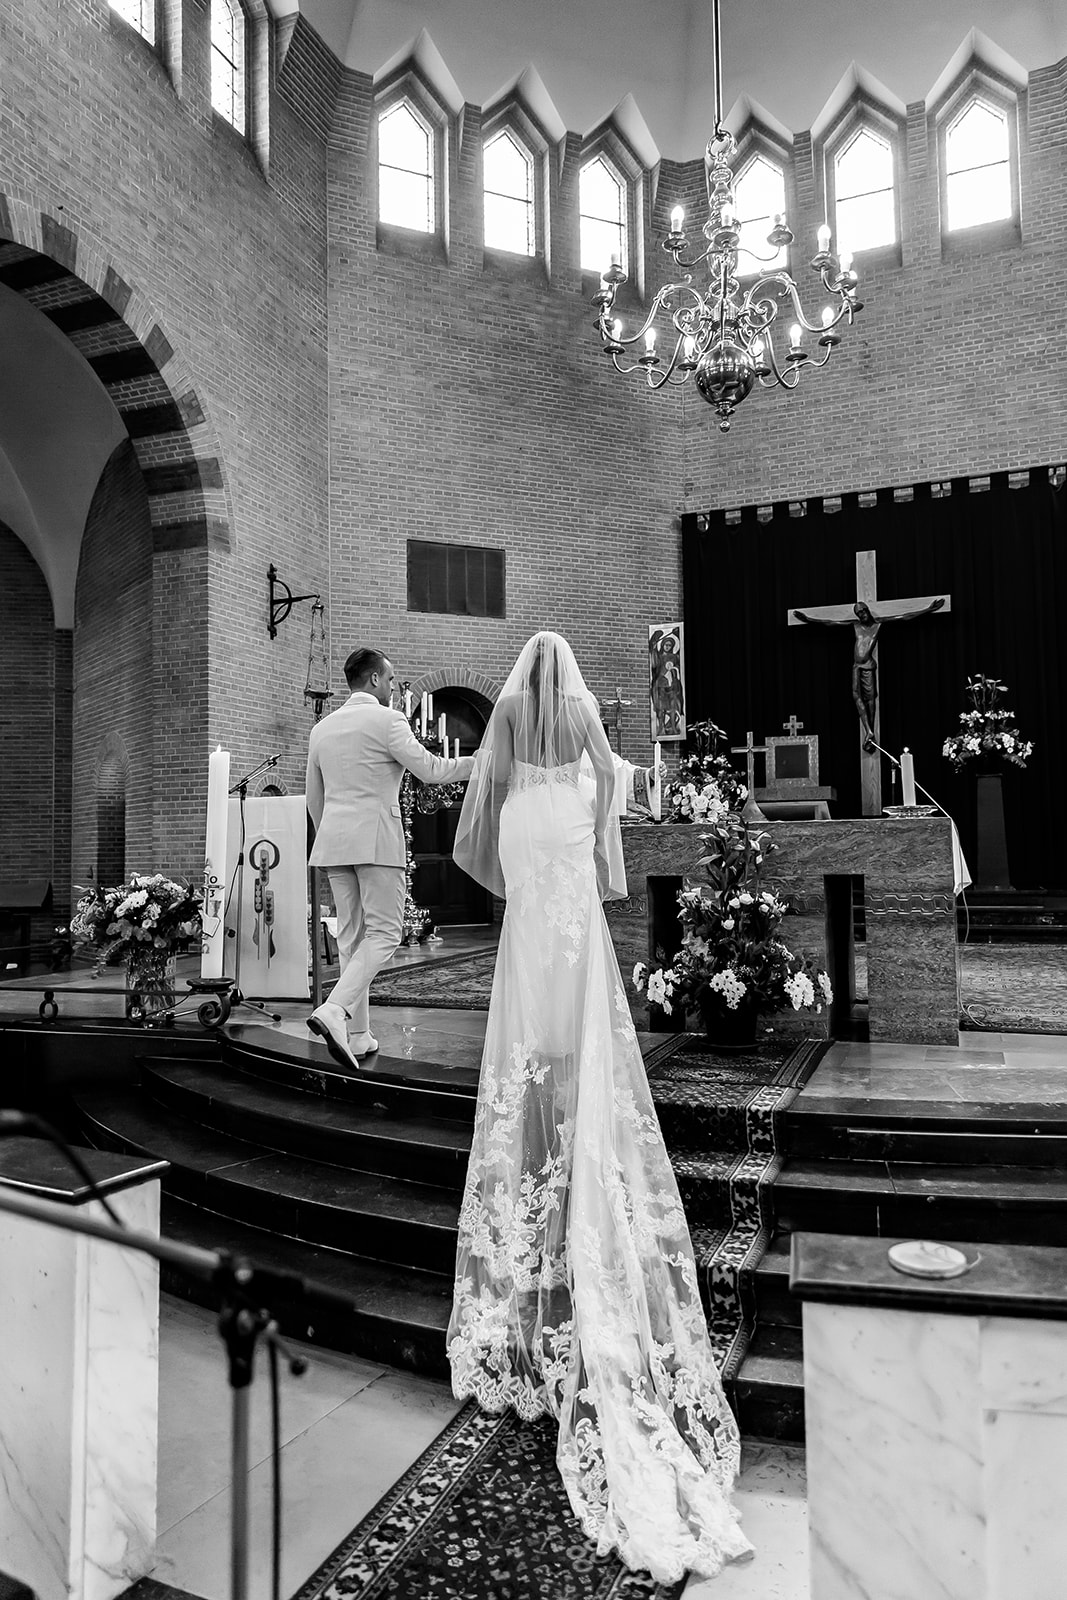 florence in haar trouwjurk bij het altaar